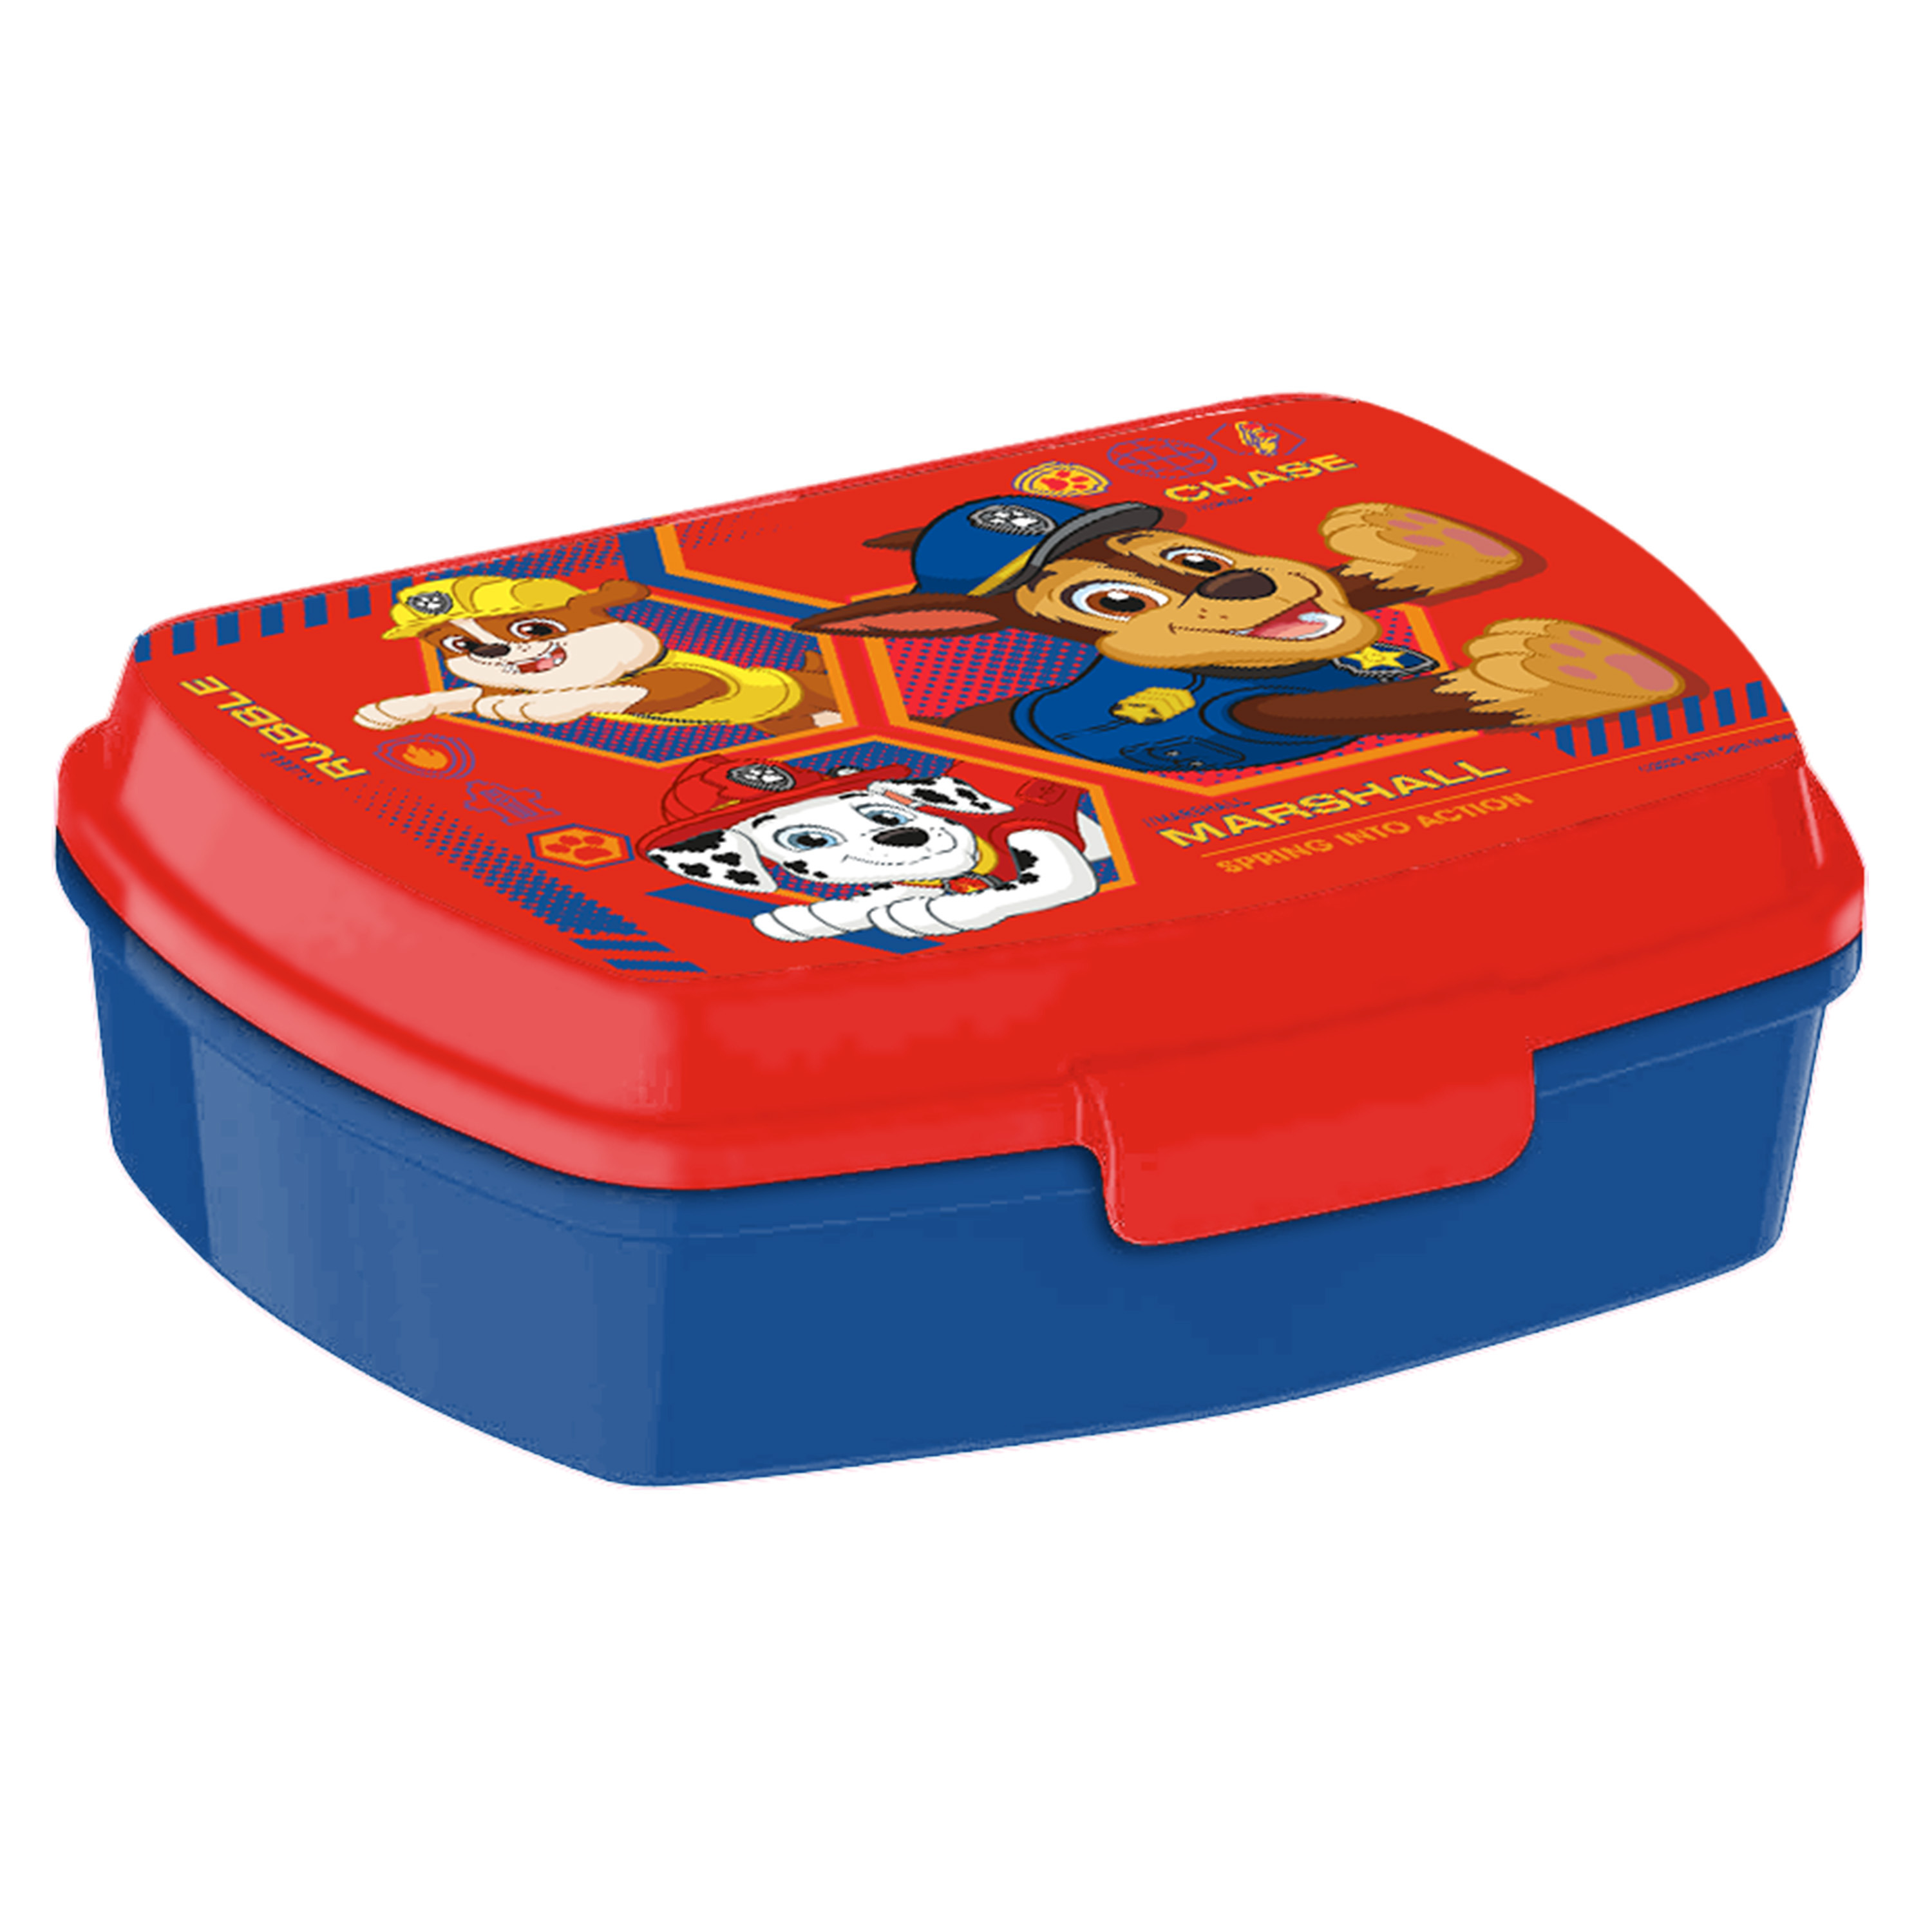 Paw PatrolÂ broodtrommel-lunchbox voor kinderen rood-blauw kunststof 20 x 10 cm